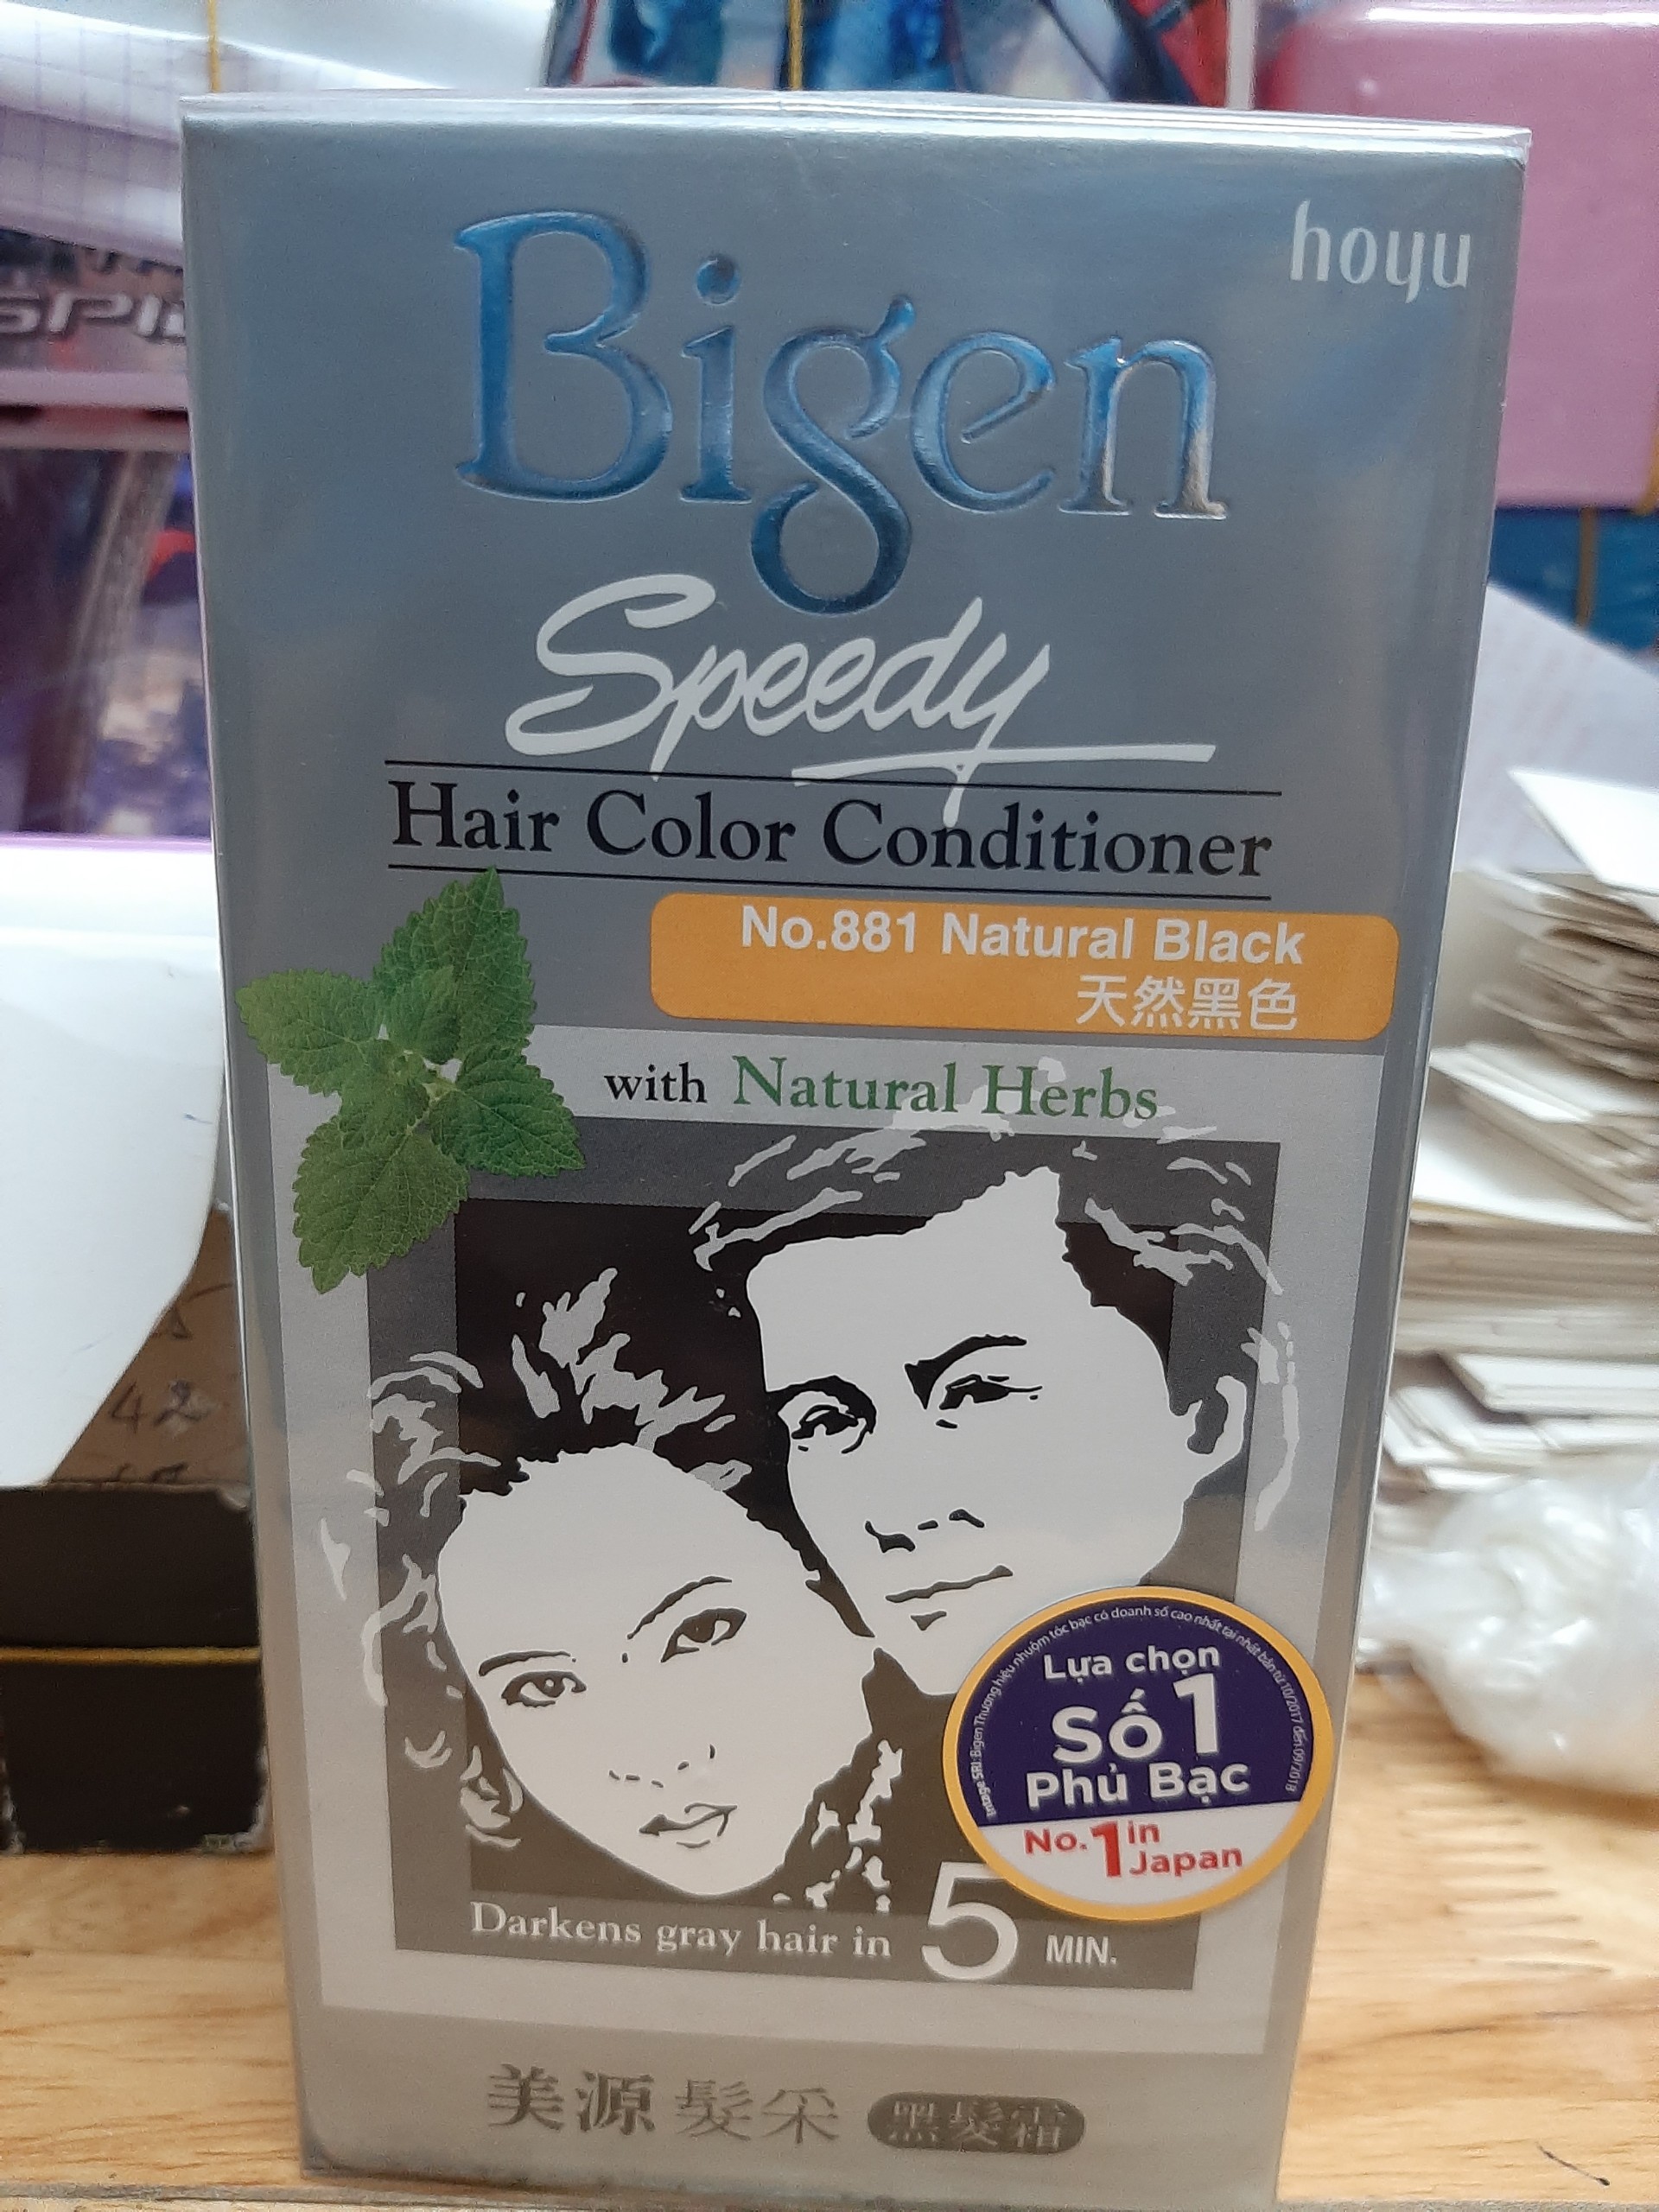 [HCM]Thuốc Nhuộm Tóc Bigen 881 Đen tự nhiên (Natural Black) Speedy Hair Color Conditioner 100% chính hãng